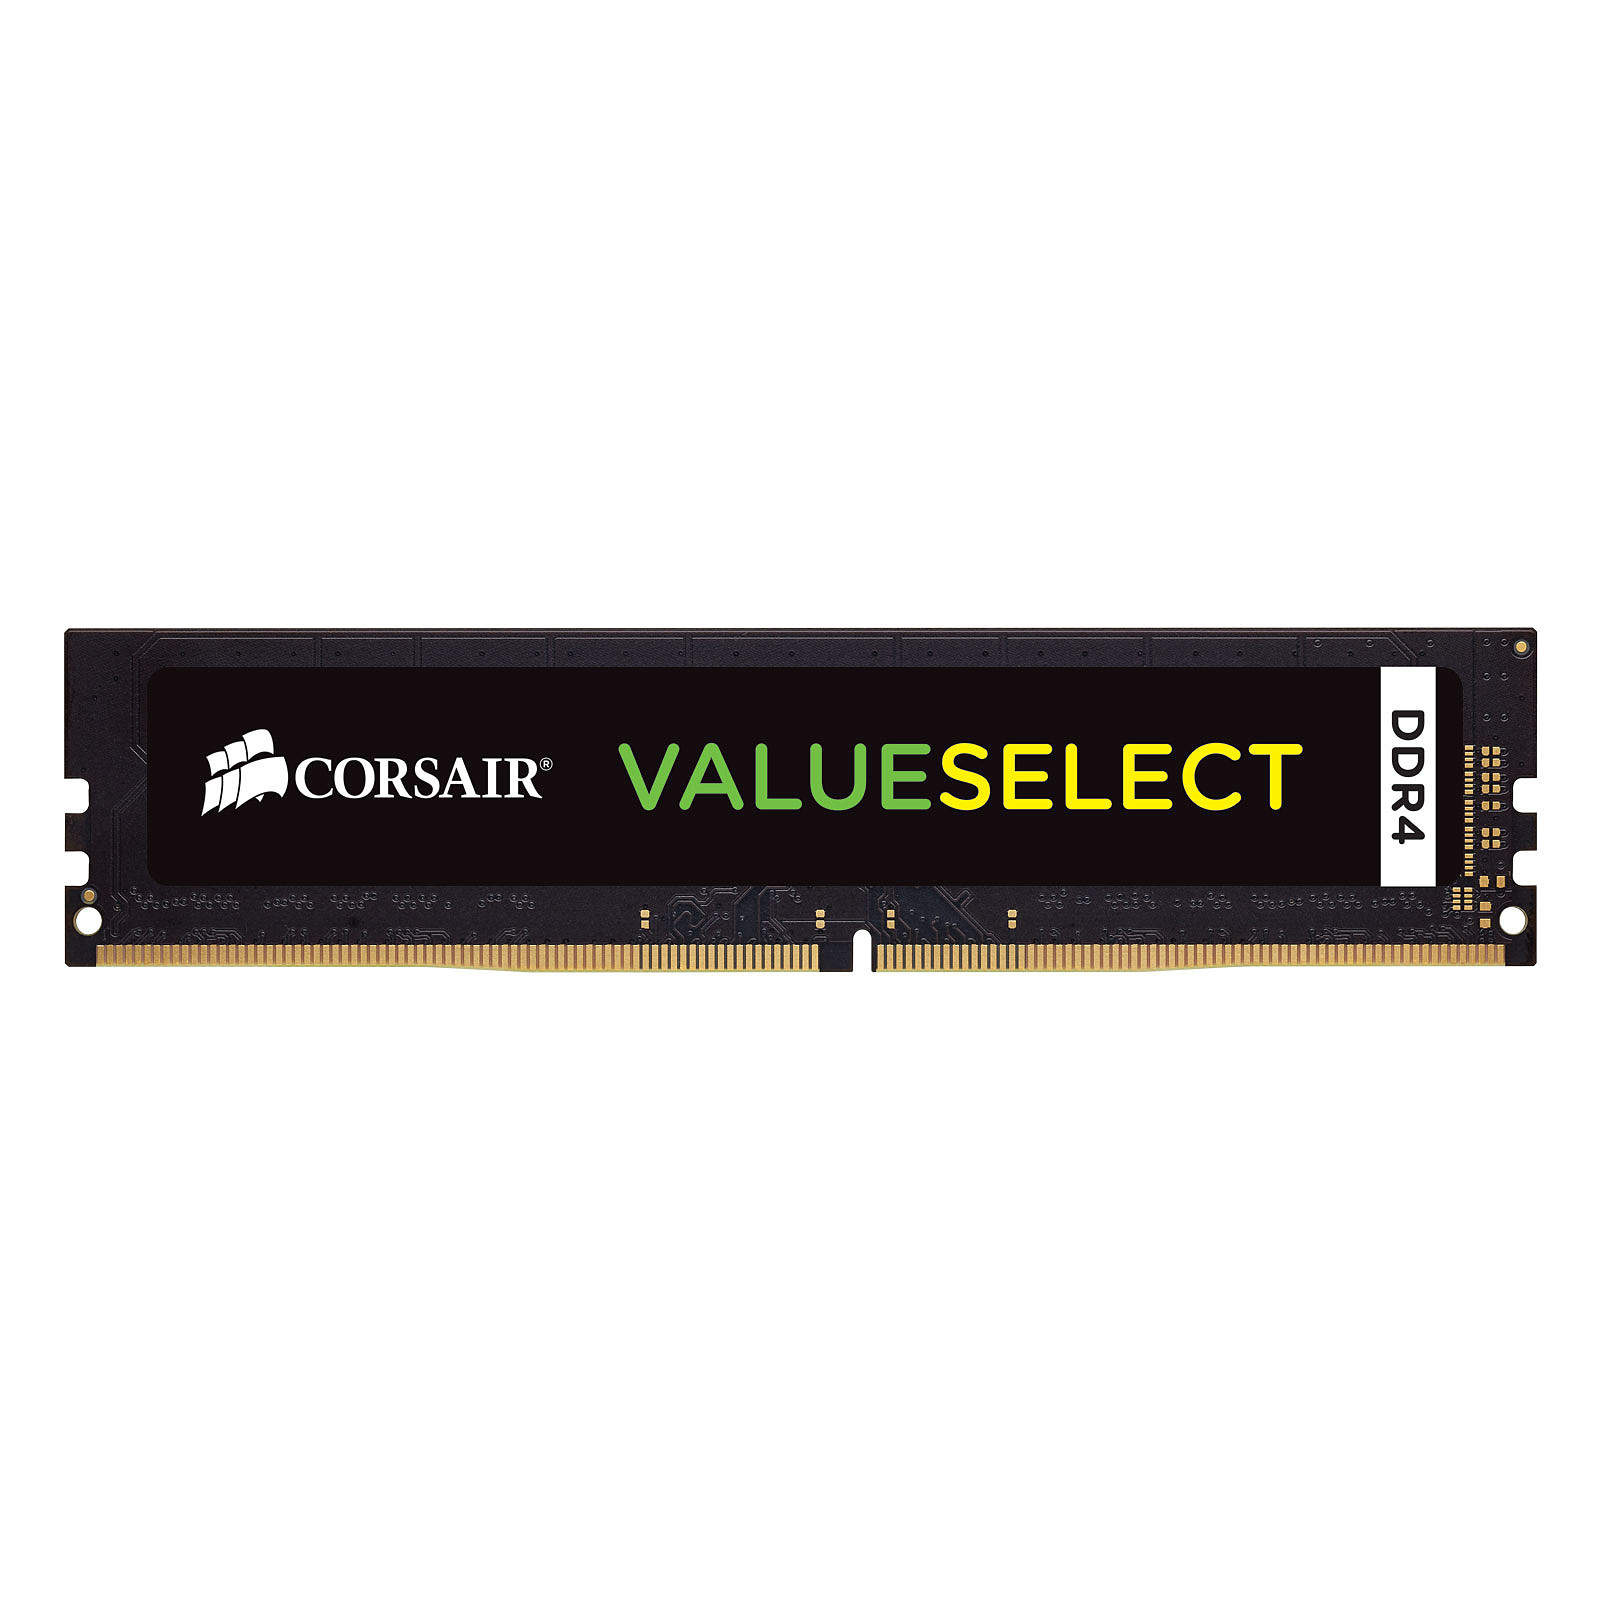 Corsair ValueSelect 16 Go DDR4 2133 MHz CL15 - Memoire PC Corsair